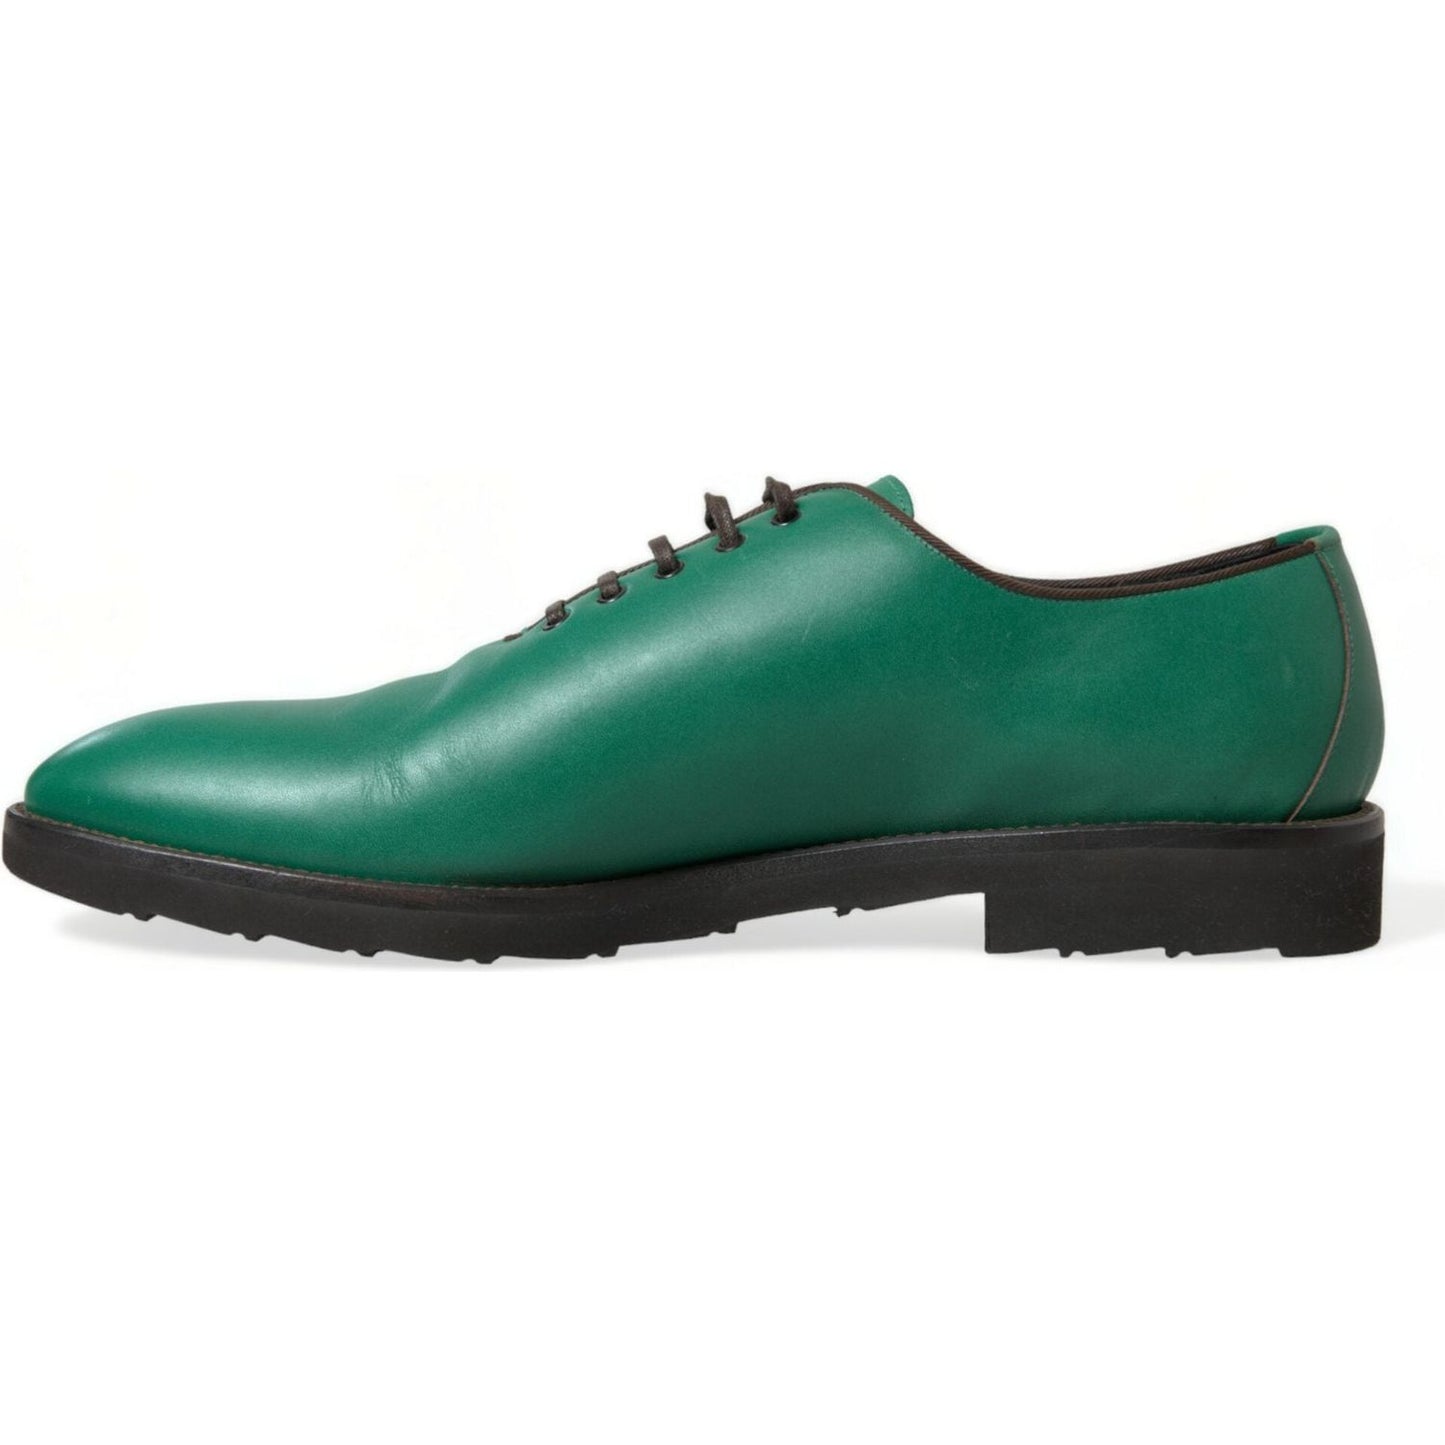 Dolce & Gabbana | Elegant Green Leather Oxford Dress Shoes| McRichard Designer Brands   